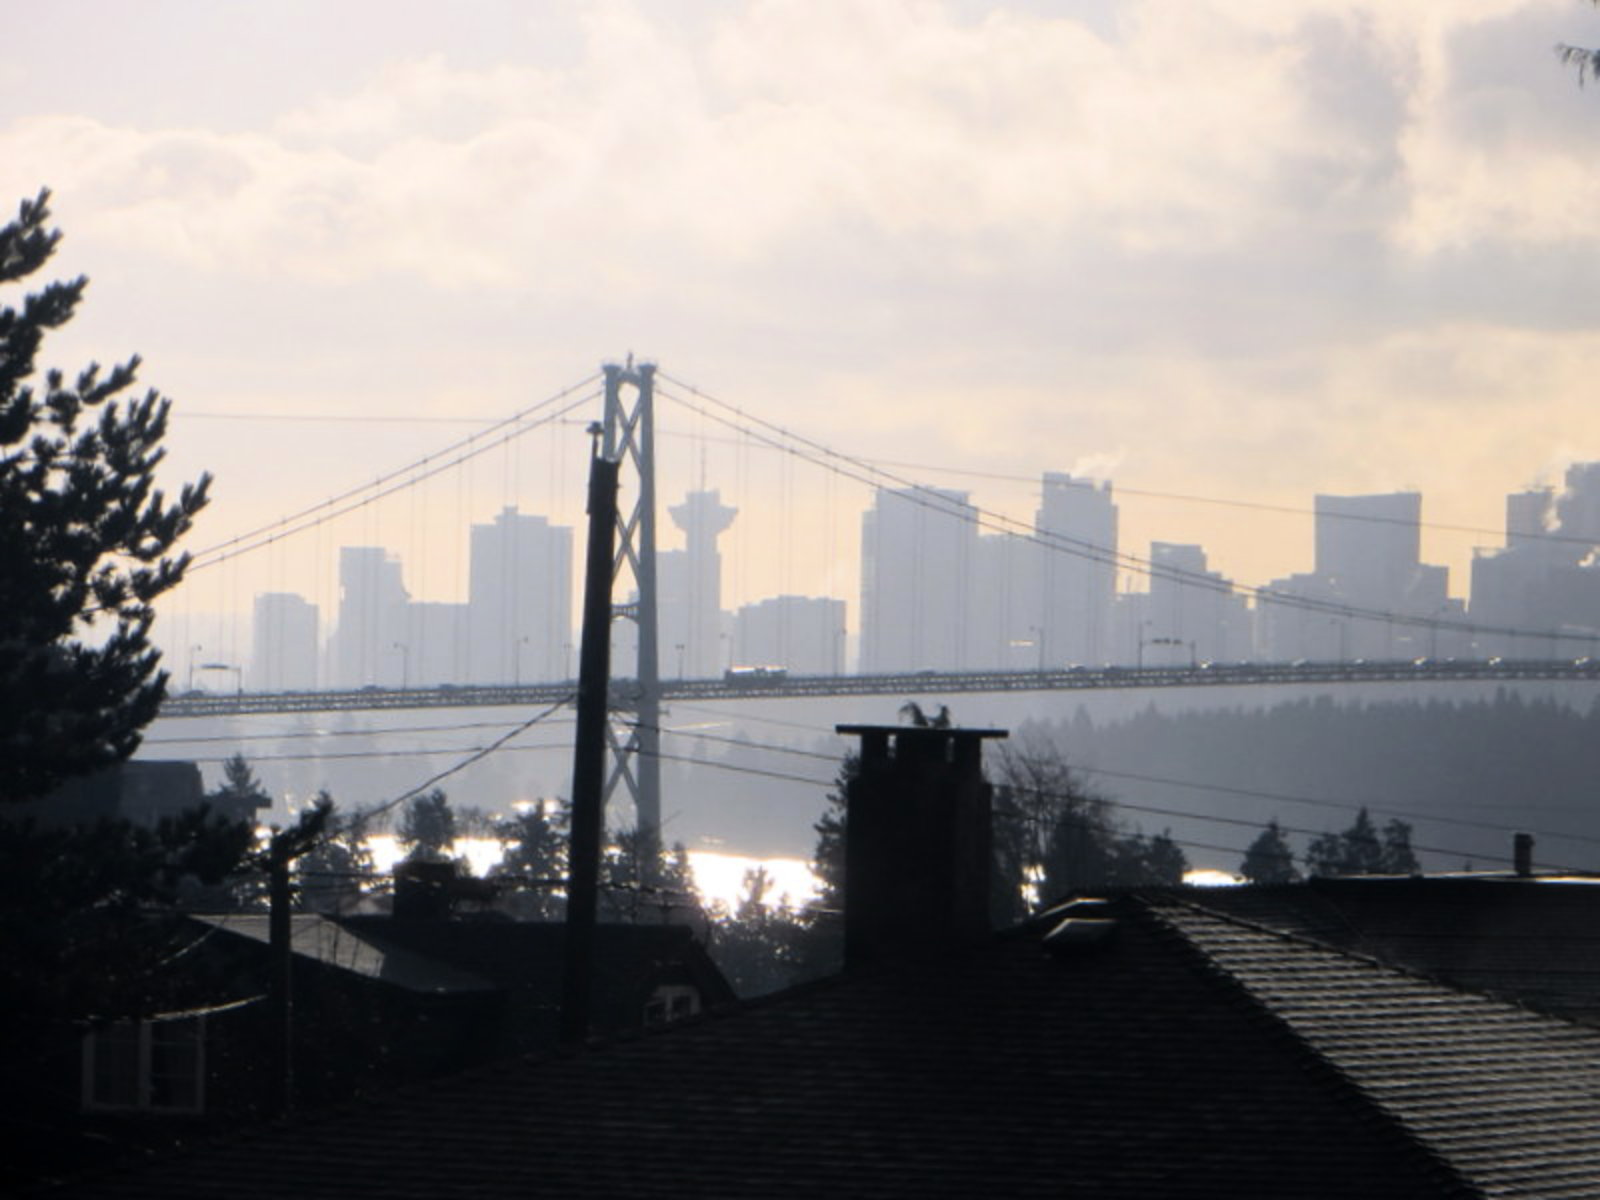 View of Bridge and City